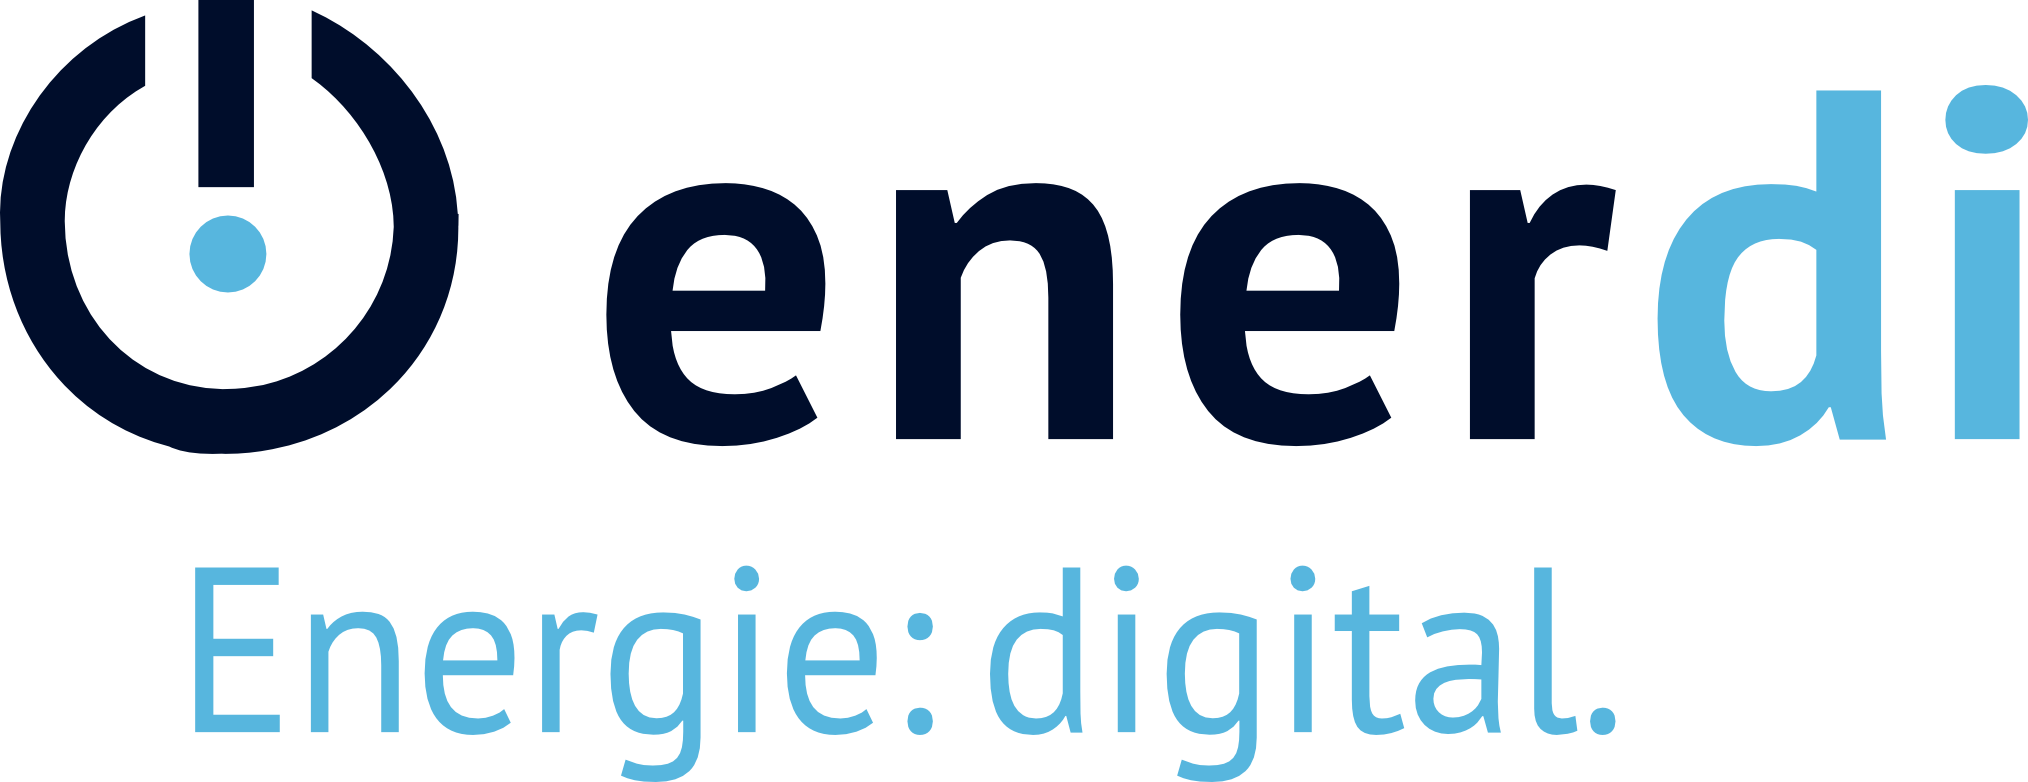 enerdi_logo